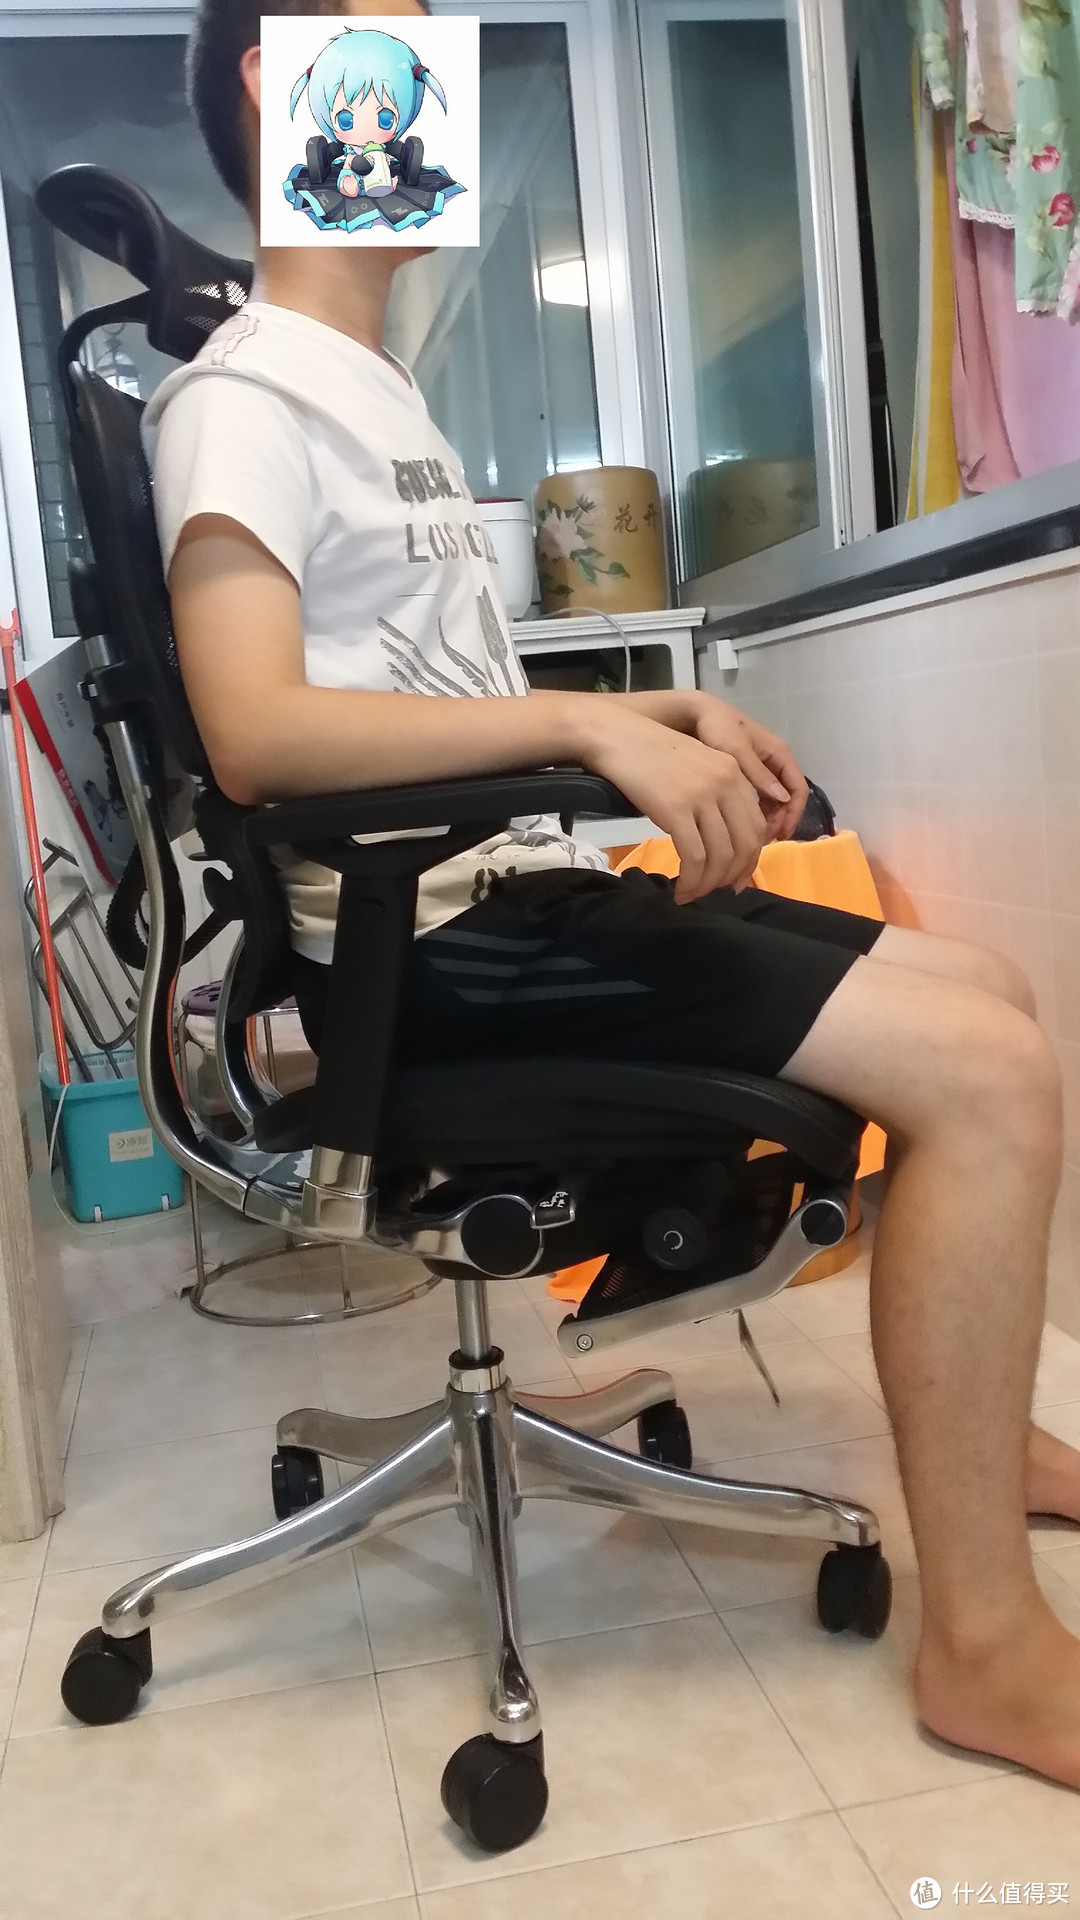 联友金豪+ & 松林 F8 两款人体工学椅 体验对比和购买建议